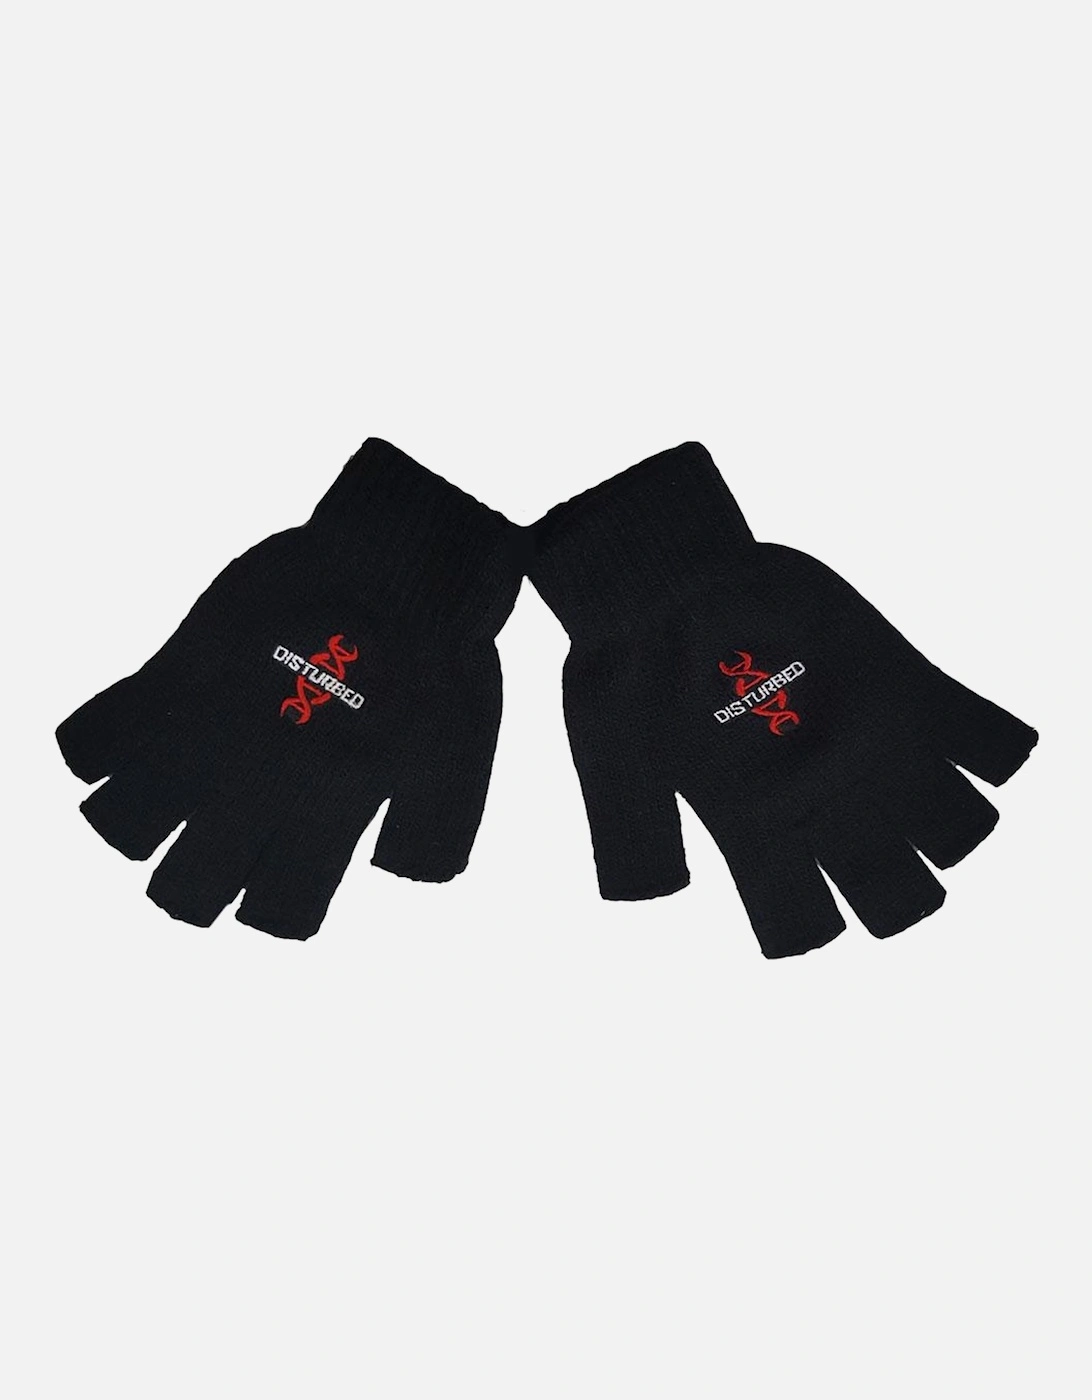 Unisex Adult Reddna Fingerless Gloves, 2 of 1